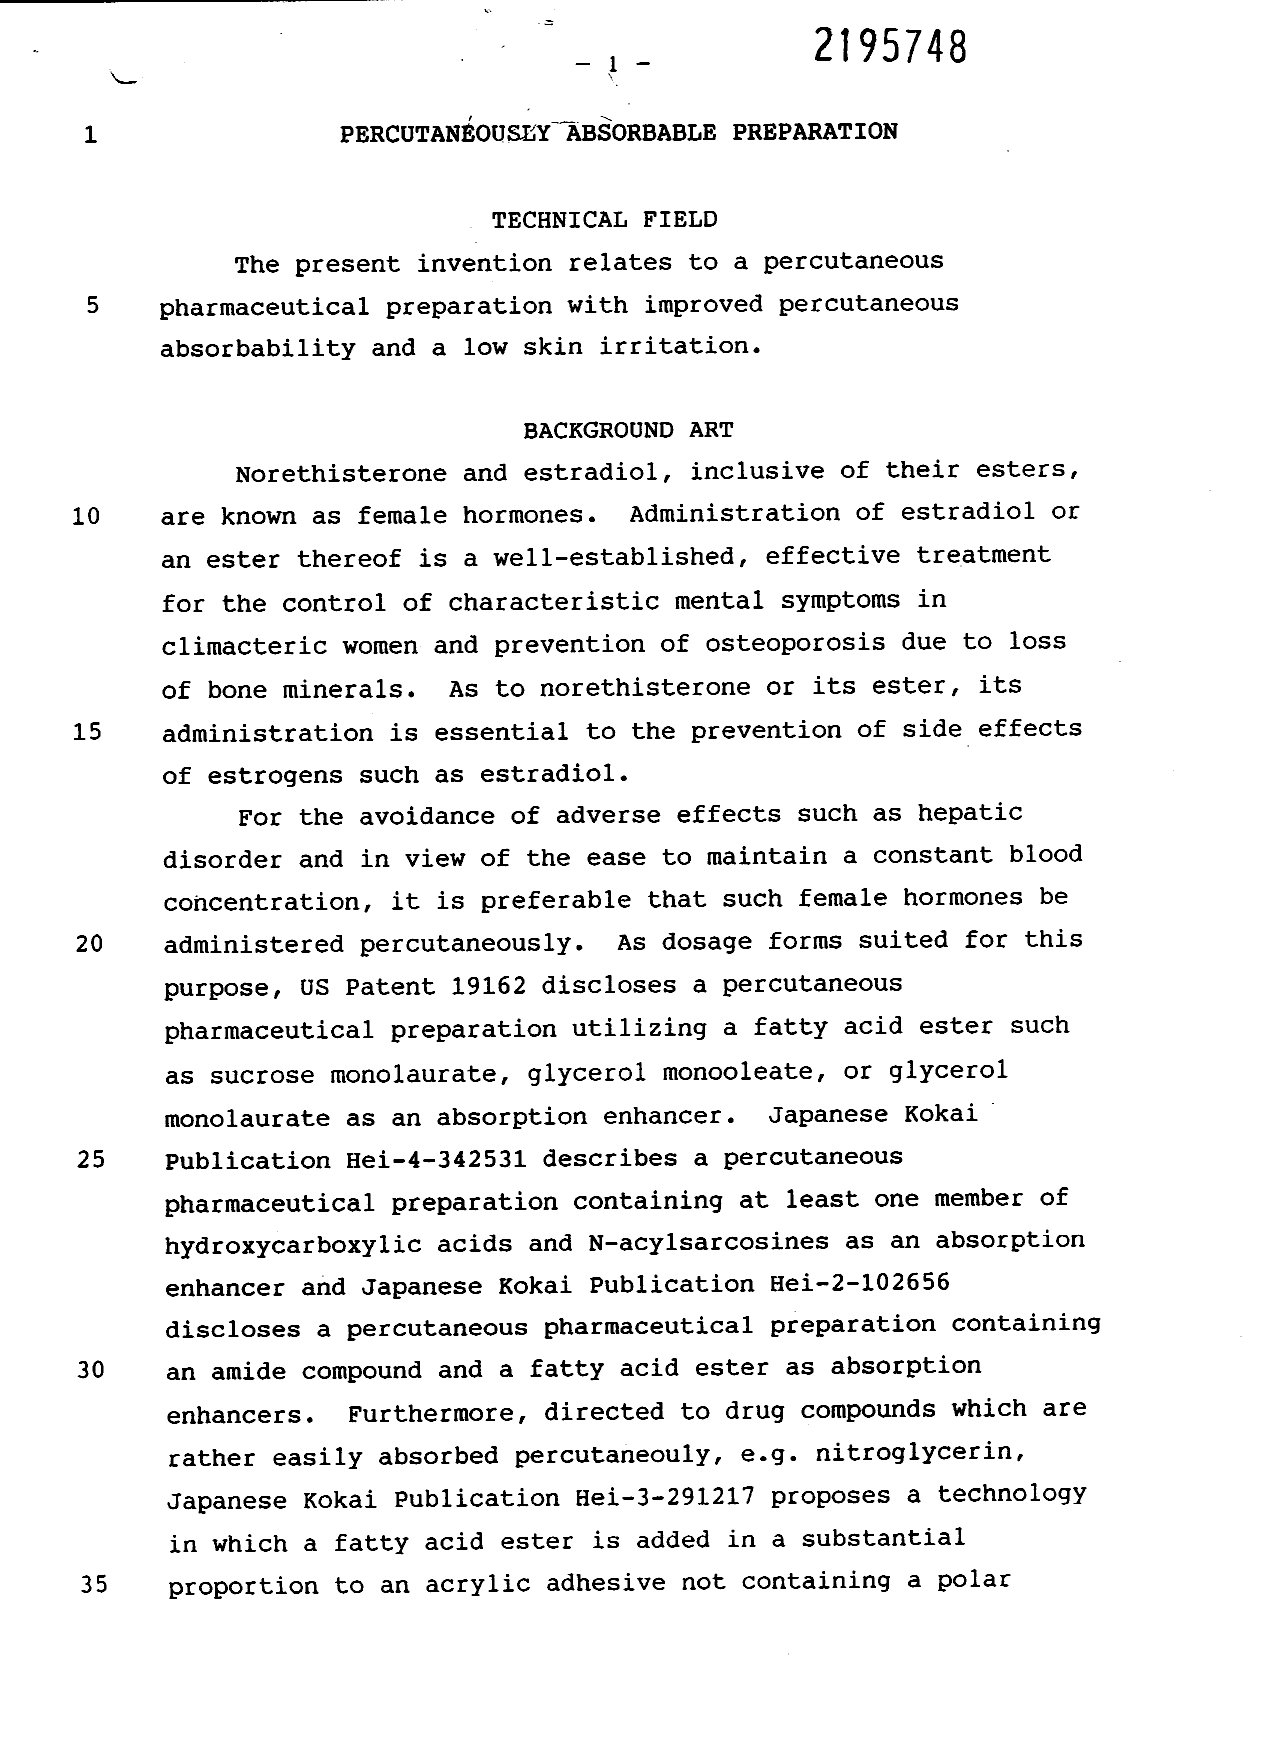 Canadian Patent Document 2195748. Description 19980610. Image 1 of 33